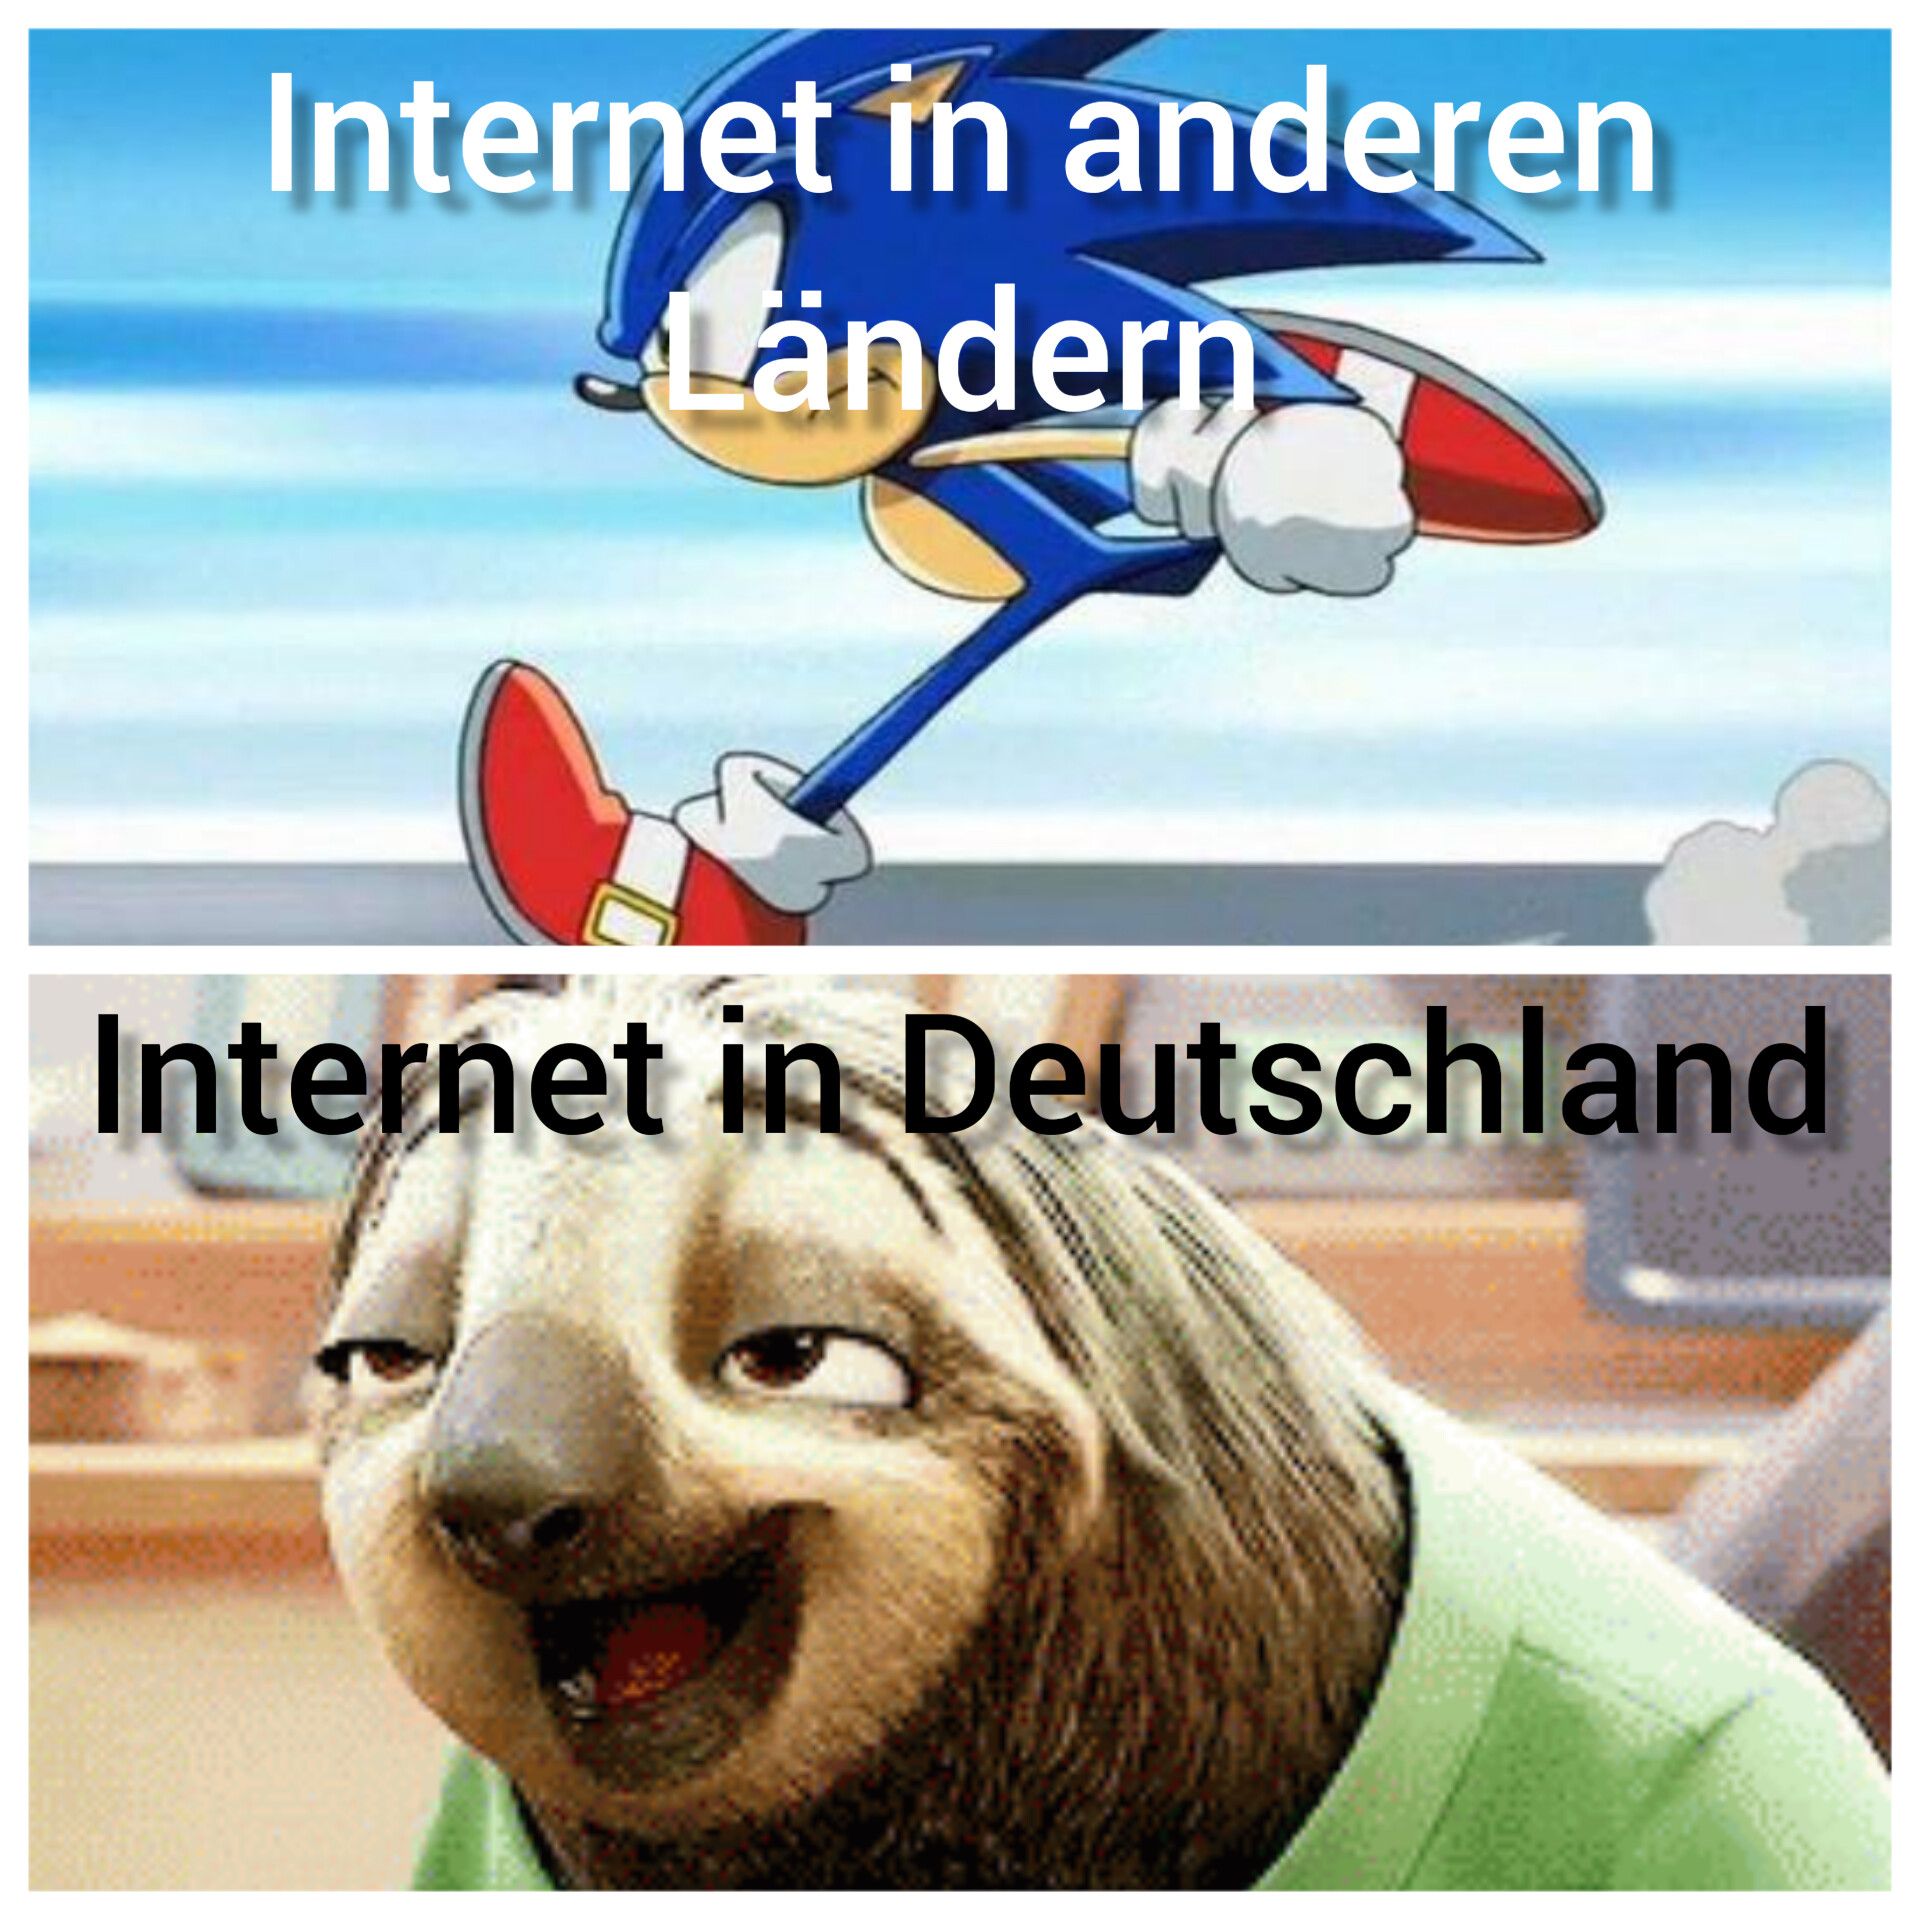 Internet in anderen
Ländern
Internet in Deutschland